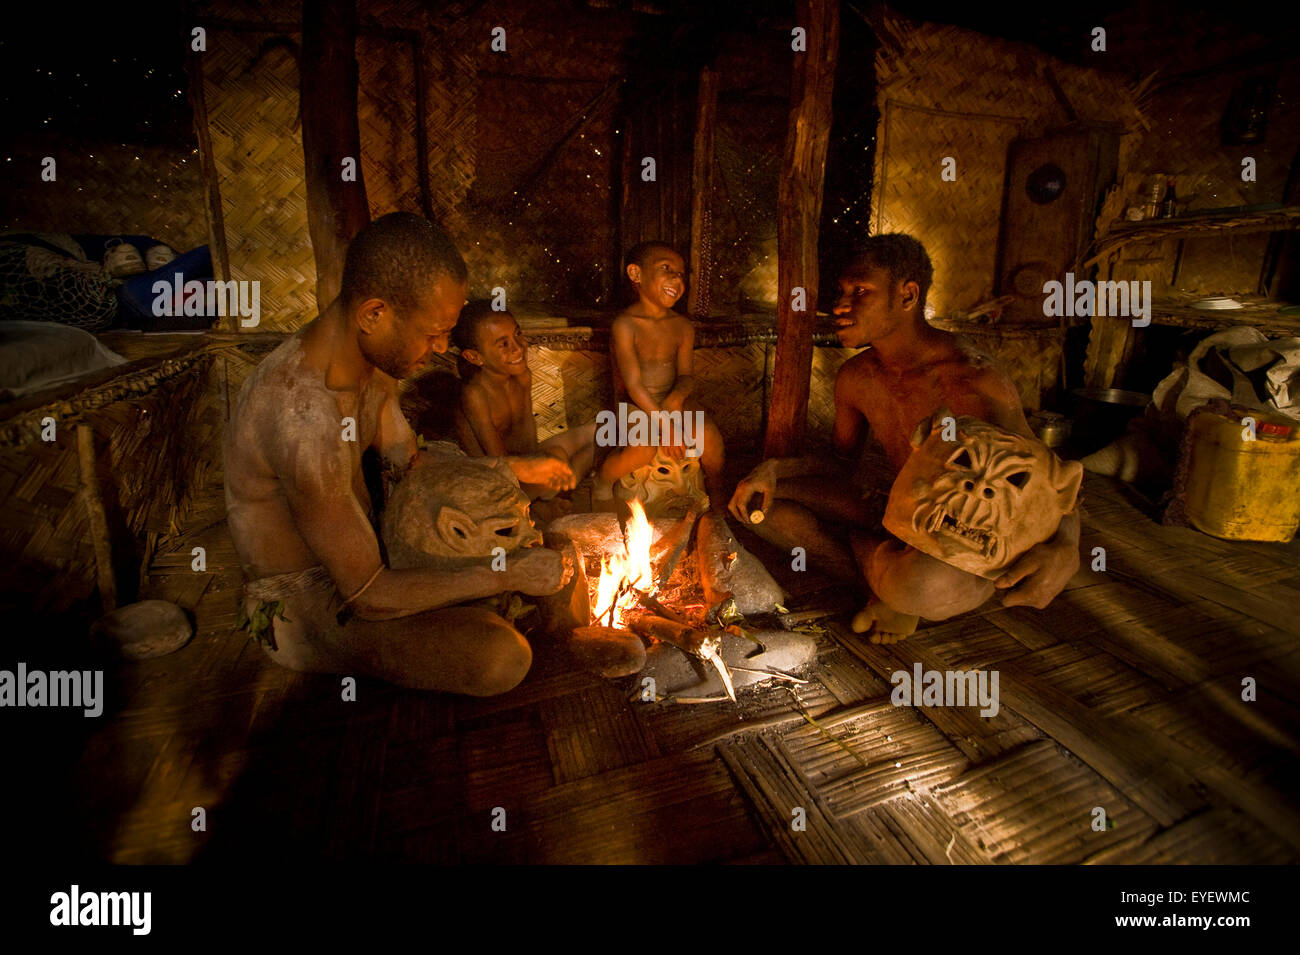 Mudmen Goroka réunis autour d'une cheminée ; Goroka, Eastern Highlands, Papouasie Nouvelle Guinée Banque D'Images